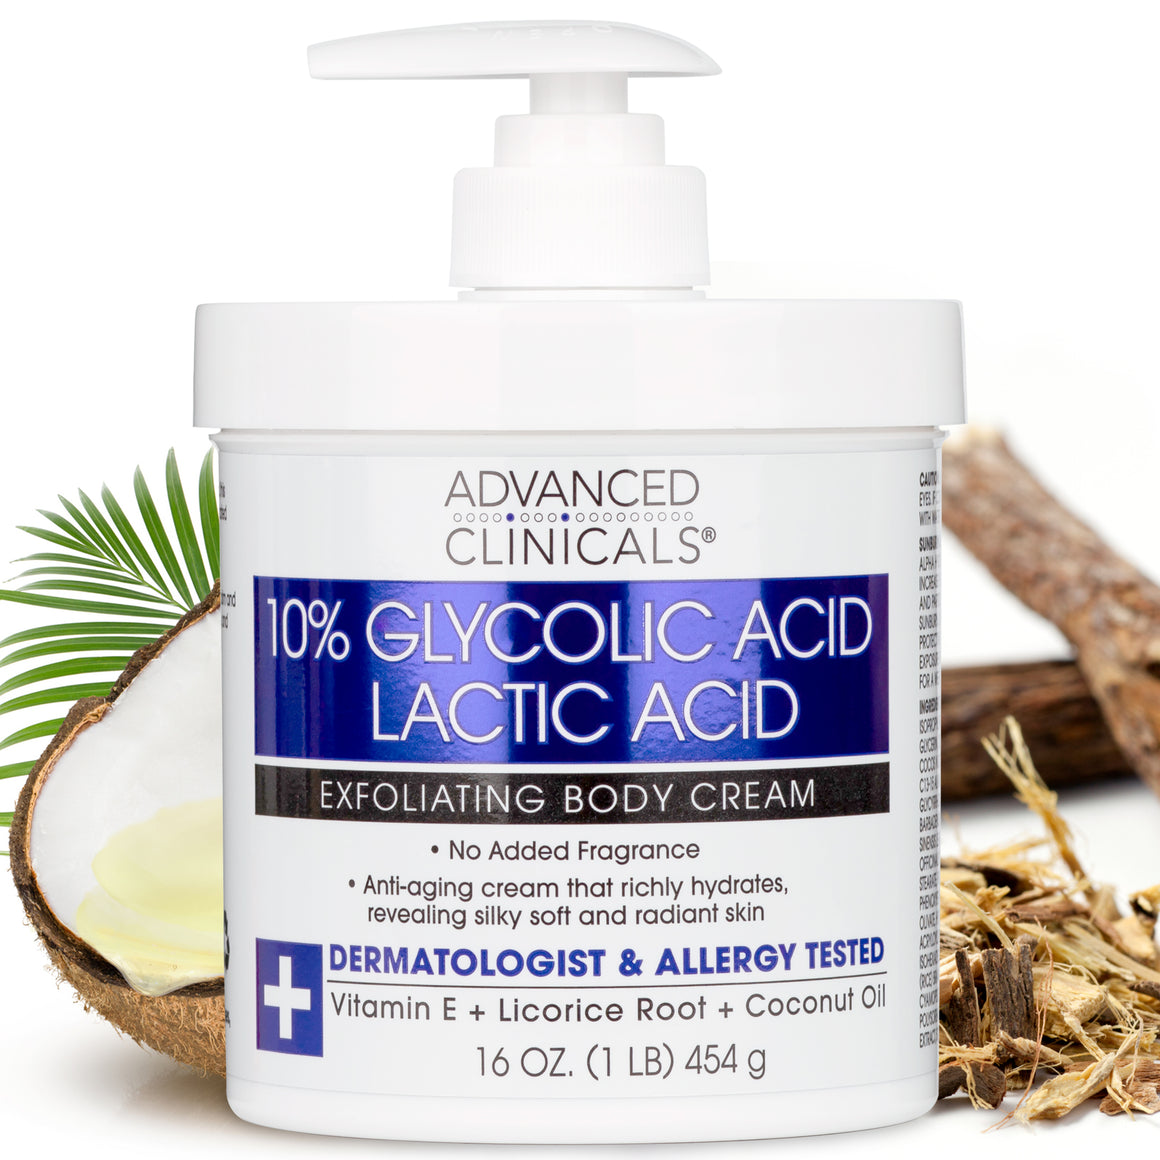 10% Glycolic Acid + Lactic Acid Exfoliating Body Cream